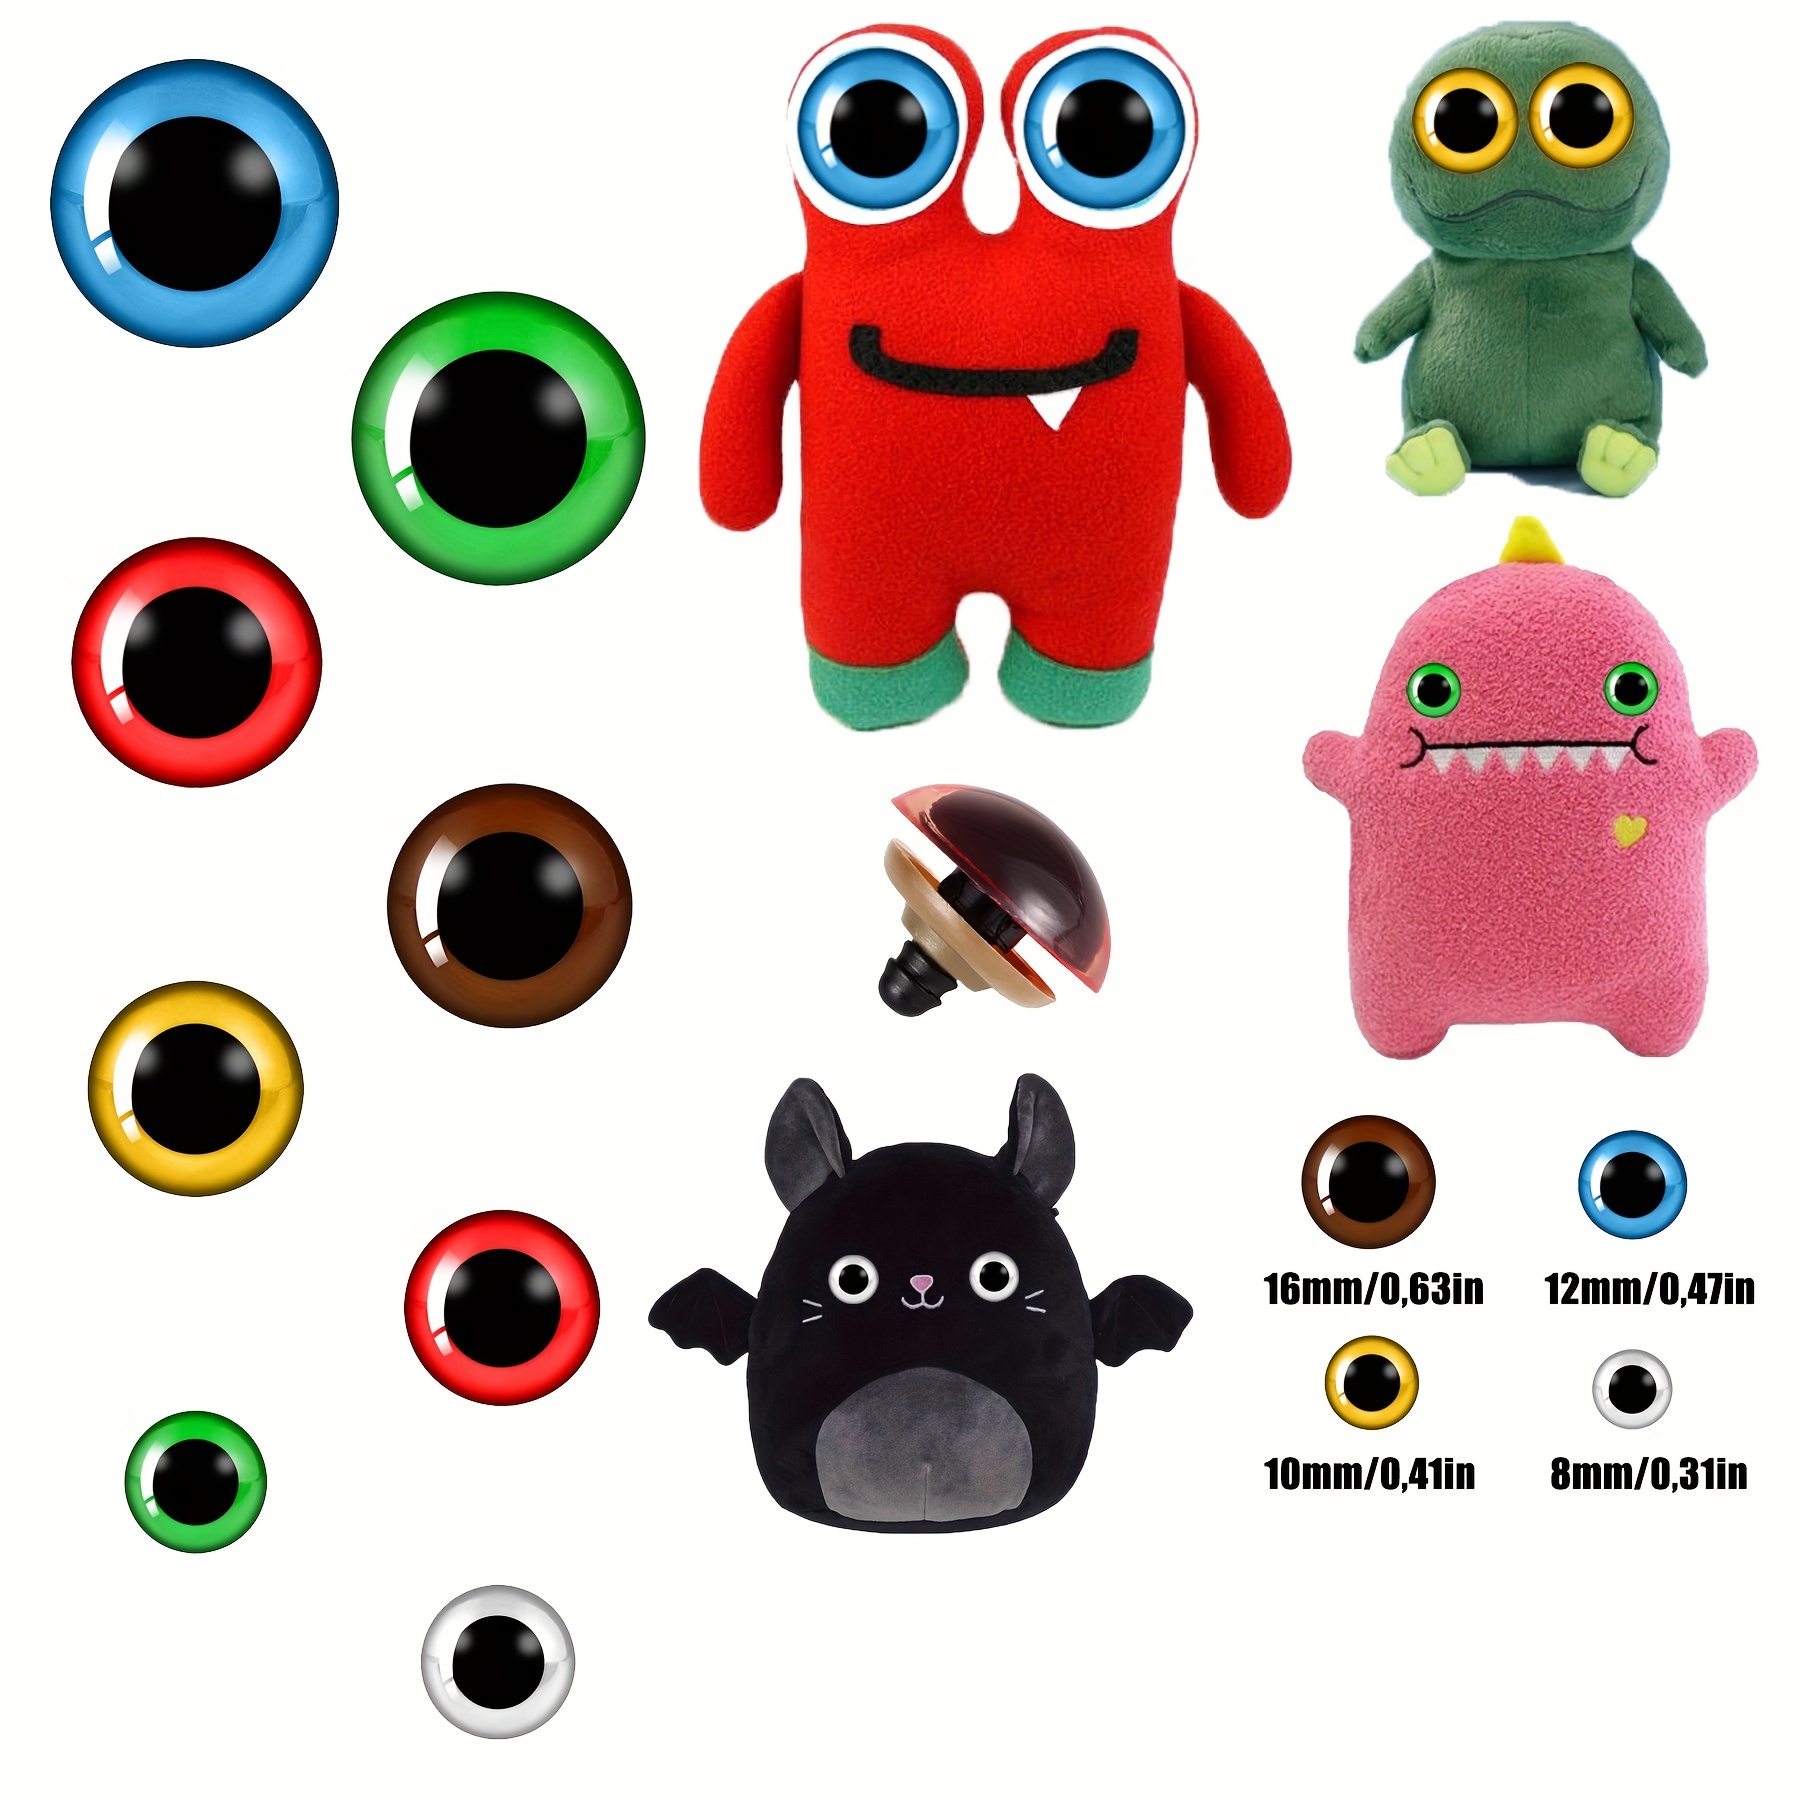 100 ojos grandes de seguridad para Amigurumi Ojos de animales rellenos con  purpurina, ojos de ganchillo de plástico para manualidades de títeres